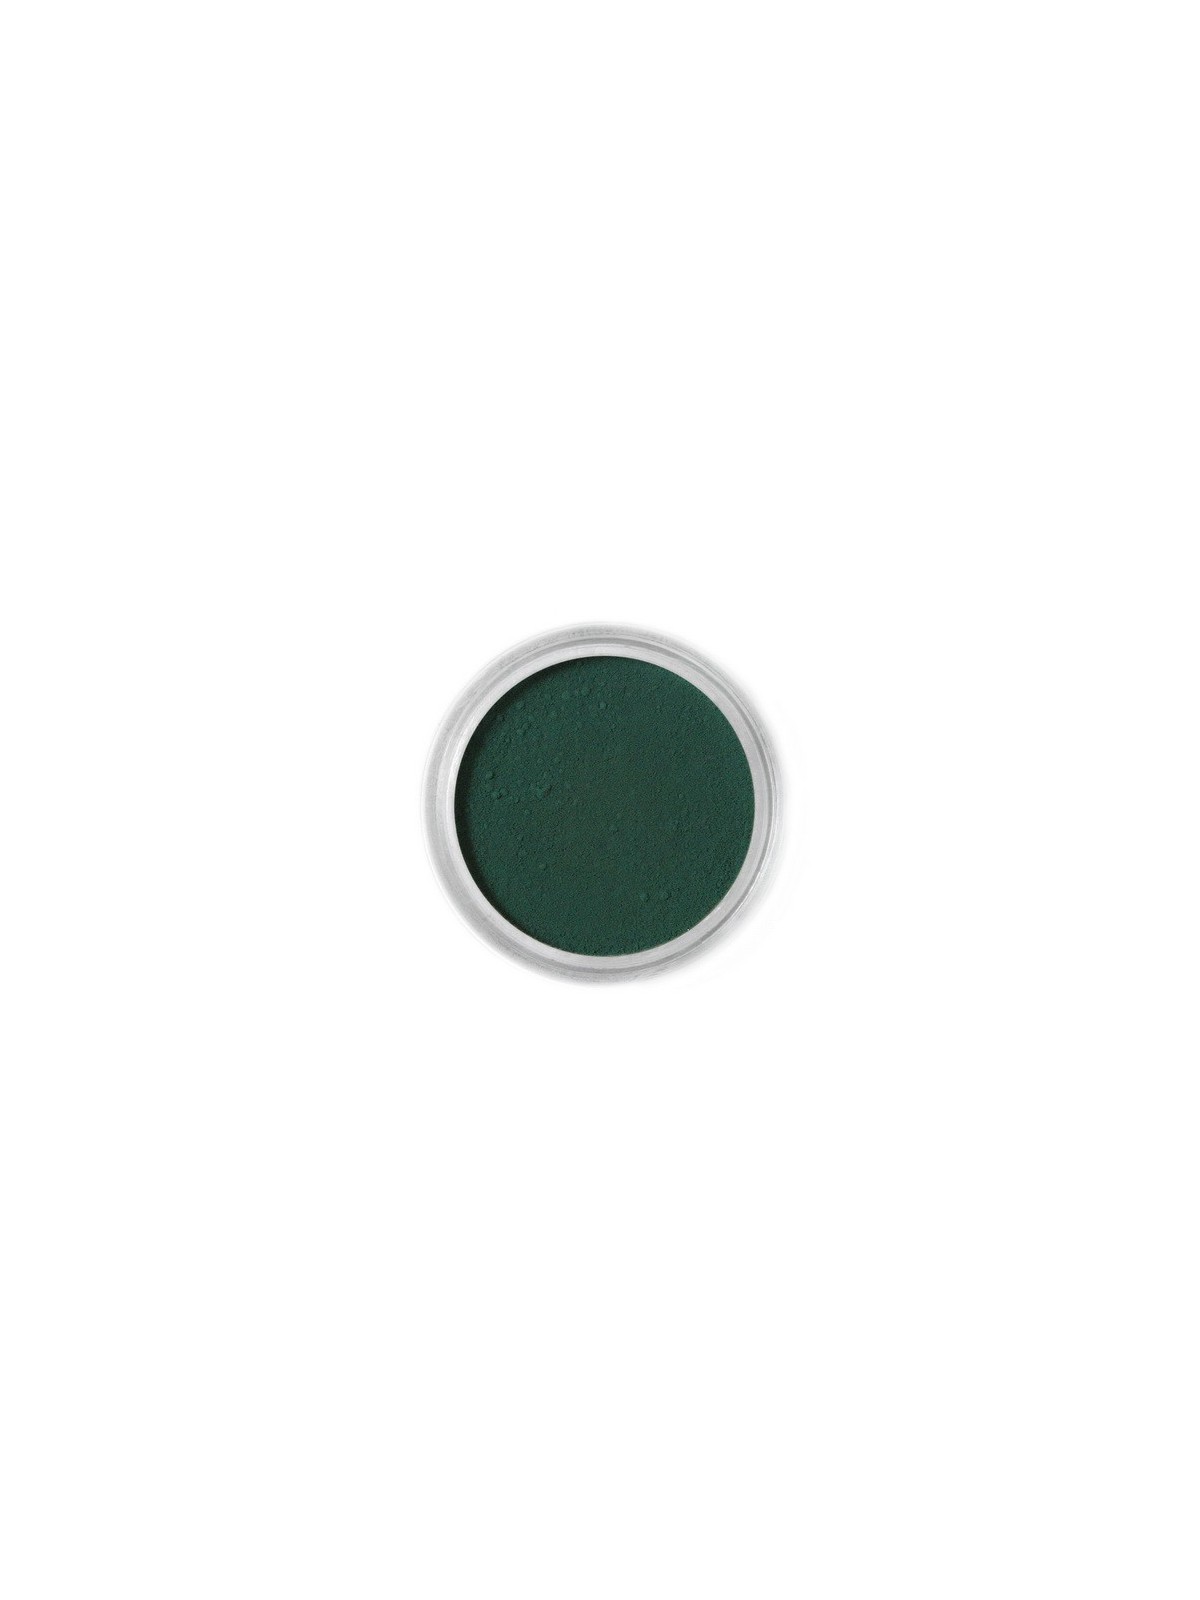 Jedlá prachová barva Fractal - Olive Green, Olajzöld (1,2 g)